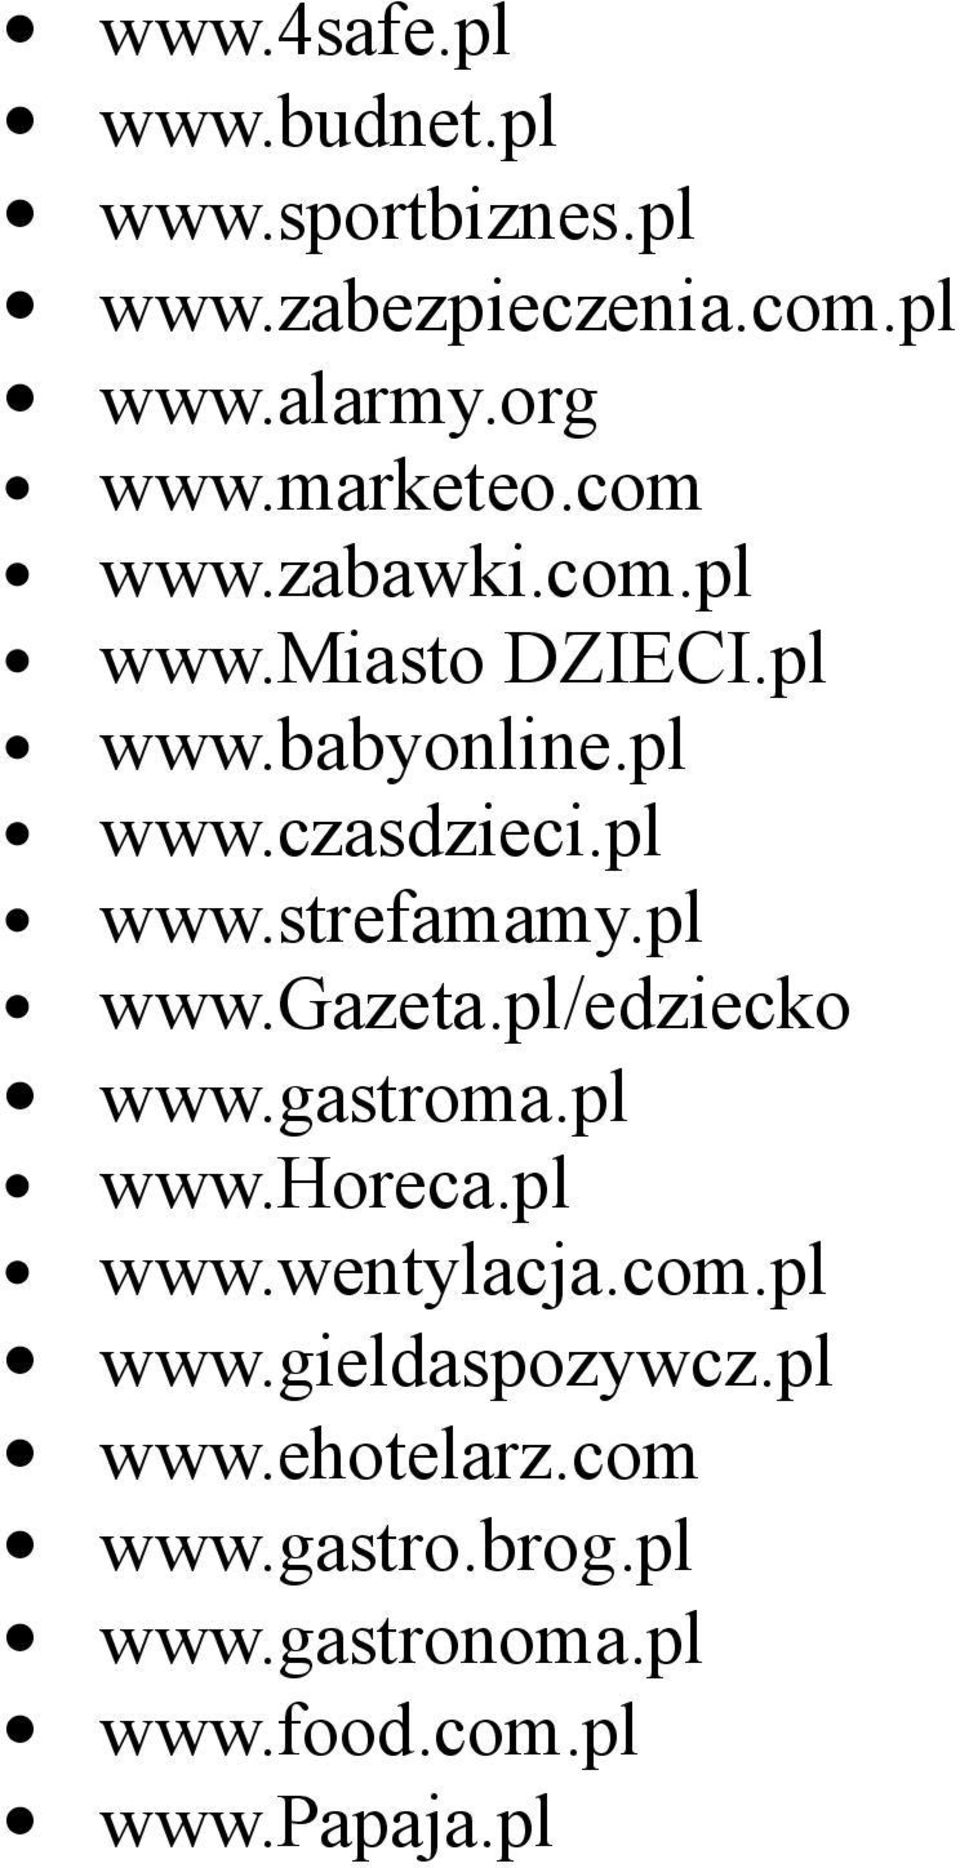 pl www.gazeta.pl/edziecko www.gastroma.pl www.horeca.pl www.wentylacja.com.pl www.gieldaspozywcz.